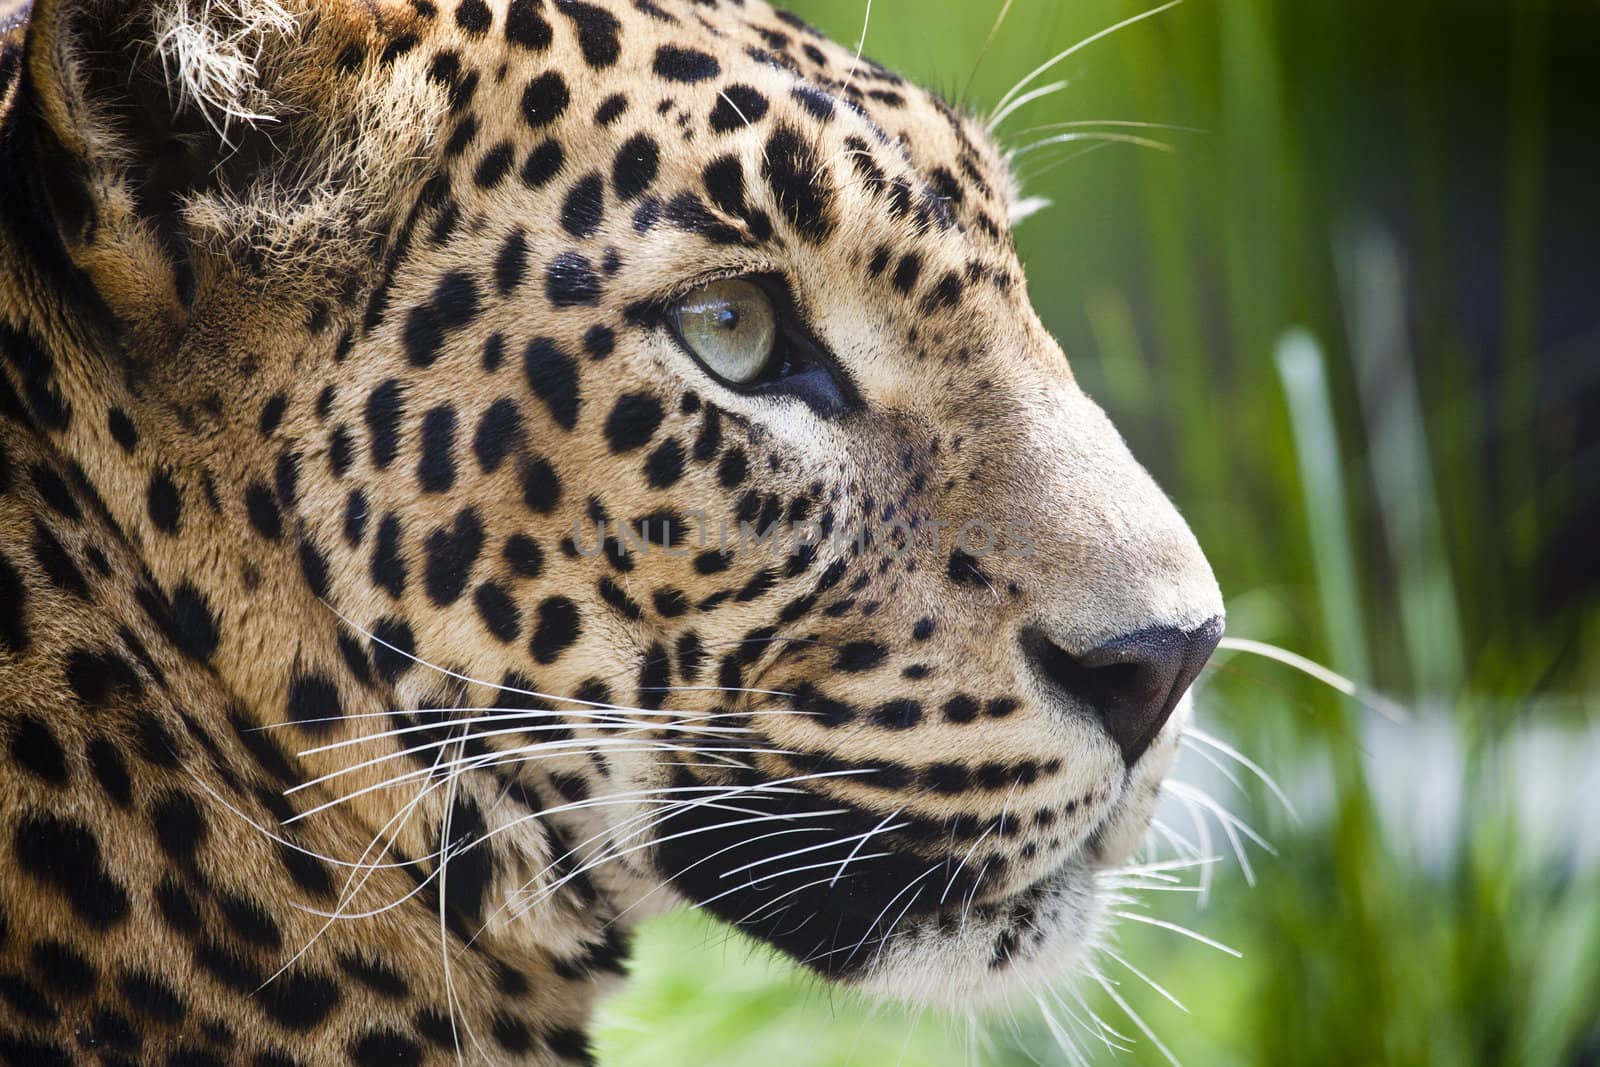 close-up of a beautiful Panther